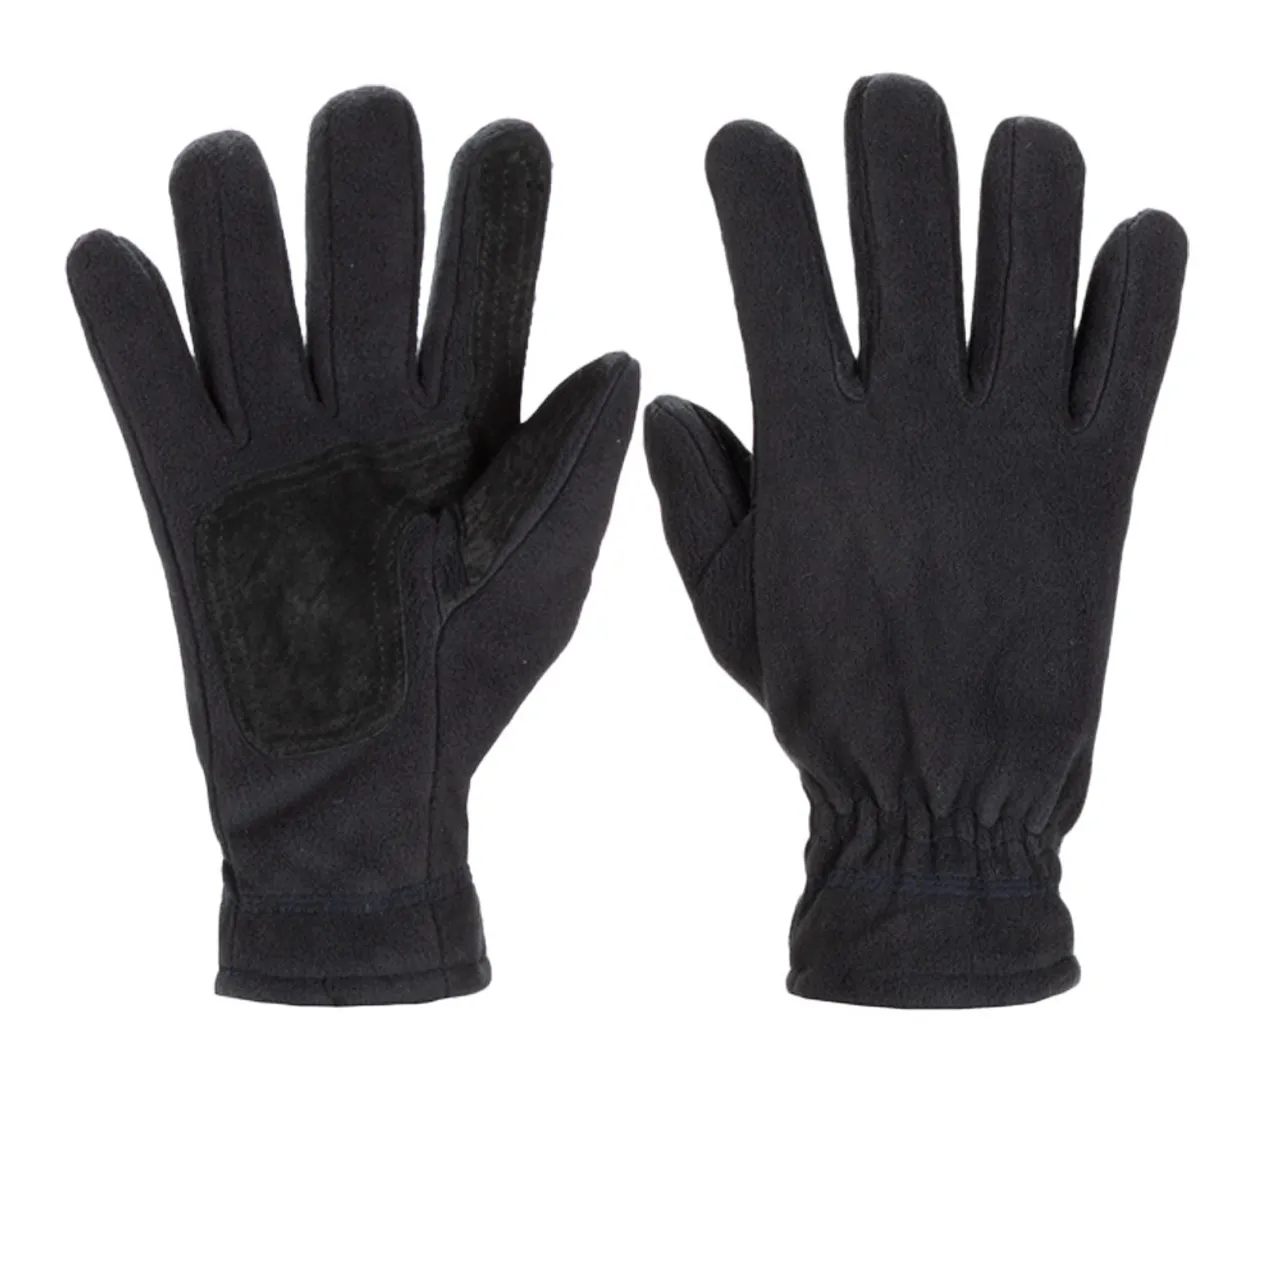 Regatta Kingsdale II Thermal Gloves